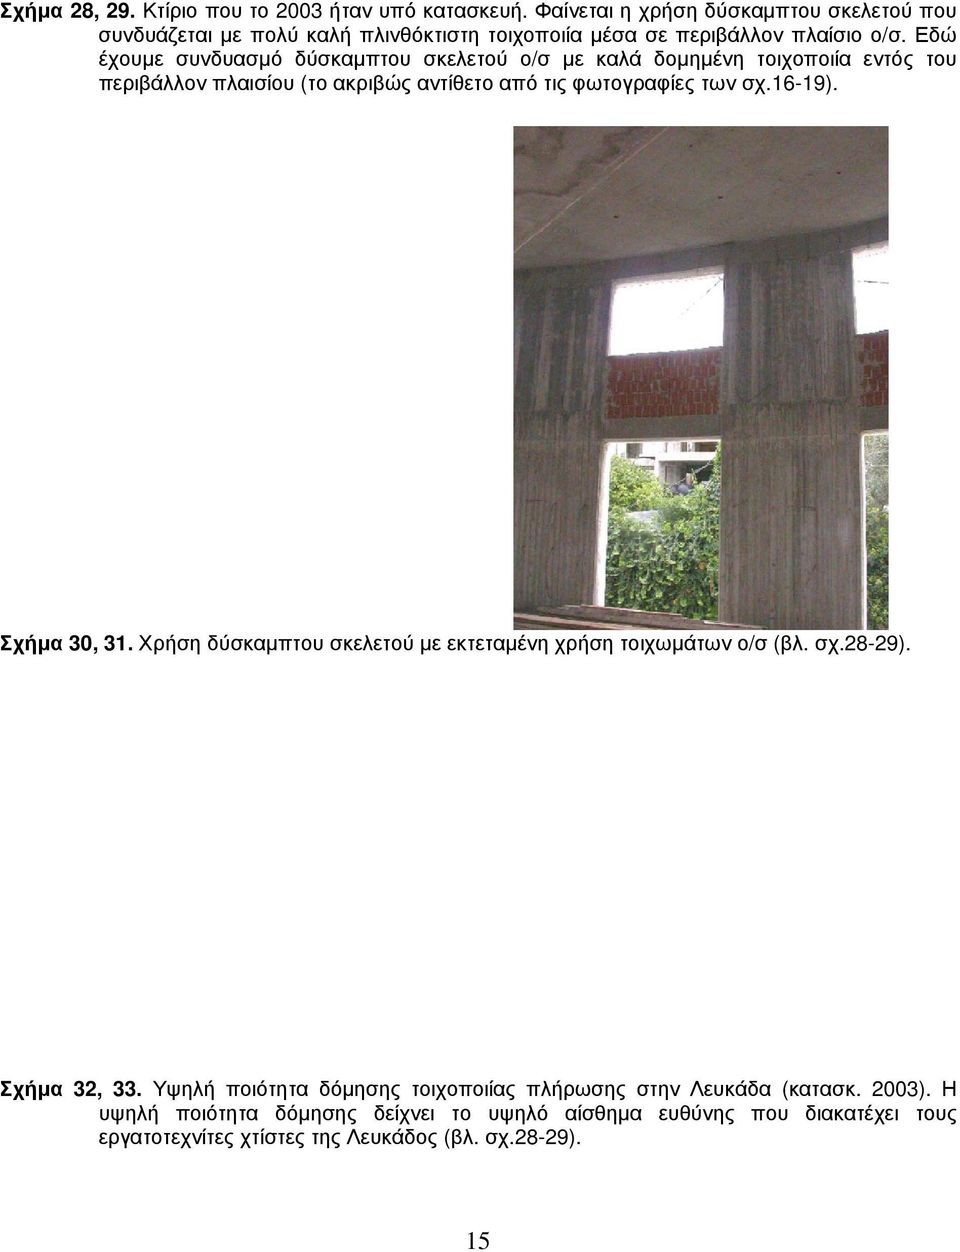 Εδώ έχουμε συνδυασμό δύσκαμπτου σκελετού ο/σ με καλά δομημένη τοιχοποιία εντός του περιβάλλον πλαισίου (το ακριβώς αντίθετο από τις φωτογραφίες των σχ.16-19).